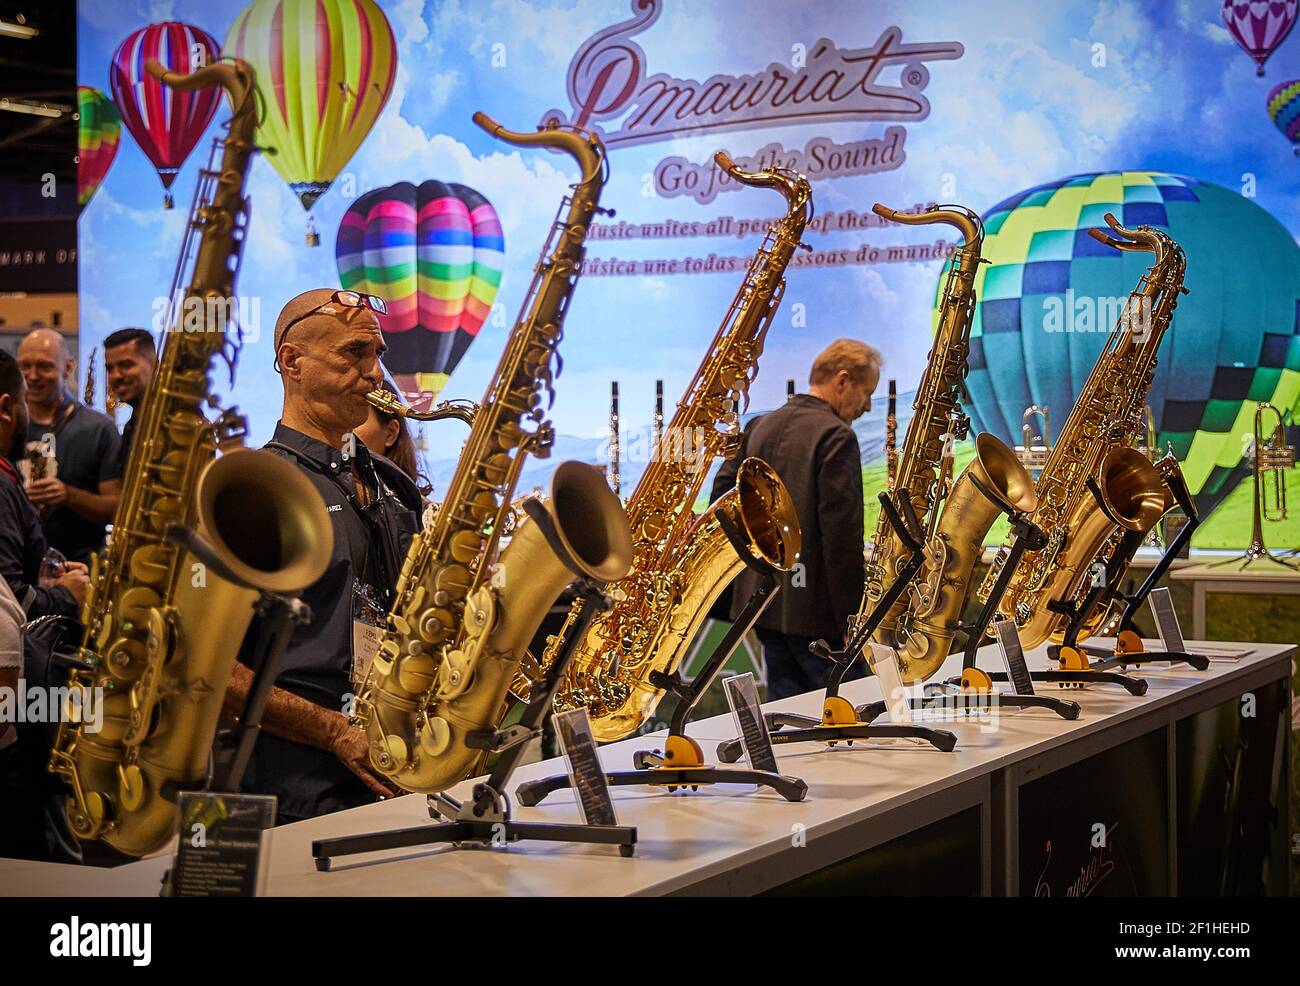 Homme jouant du saxophone à la Convention sur les instruments de musique Banque D'Images